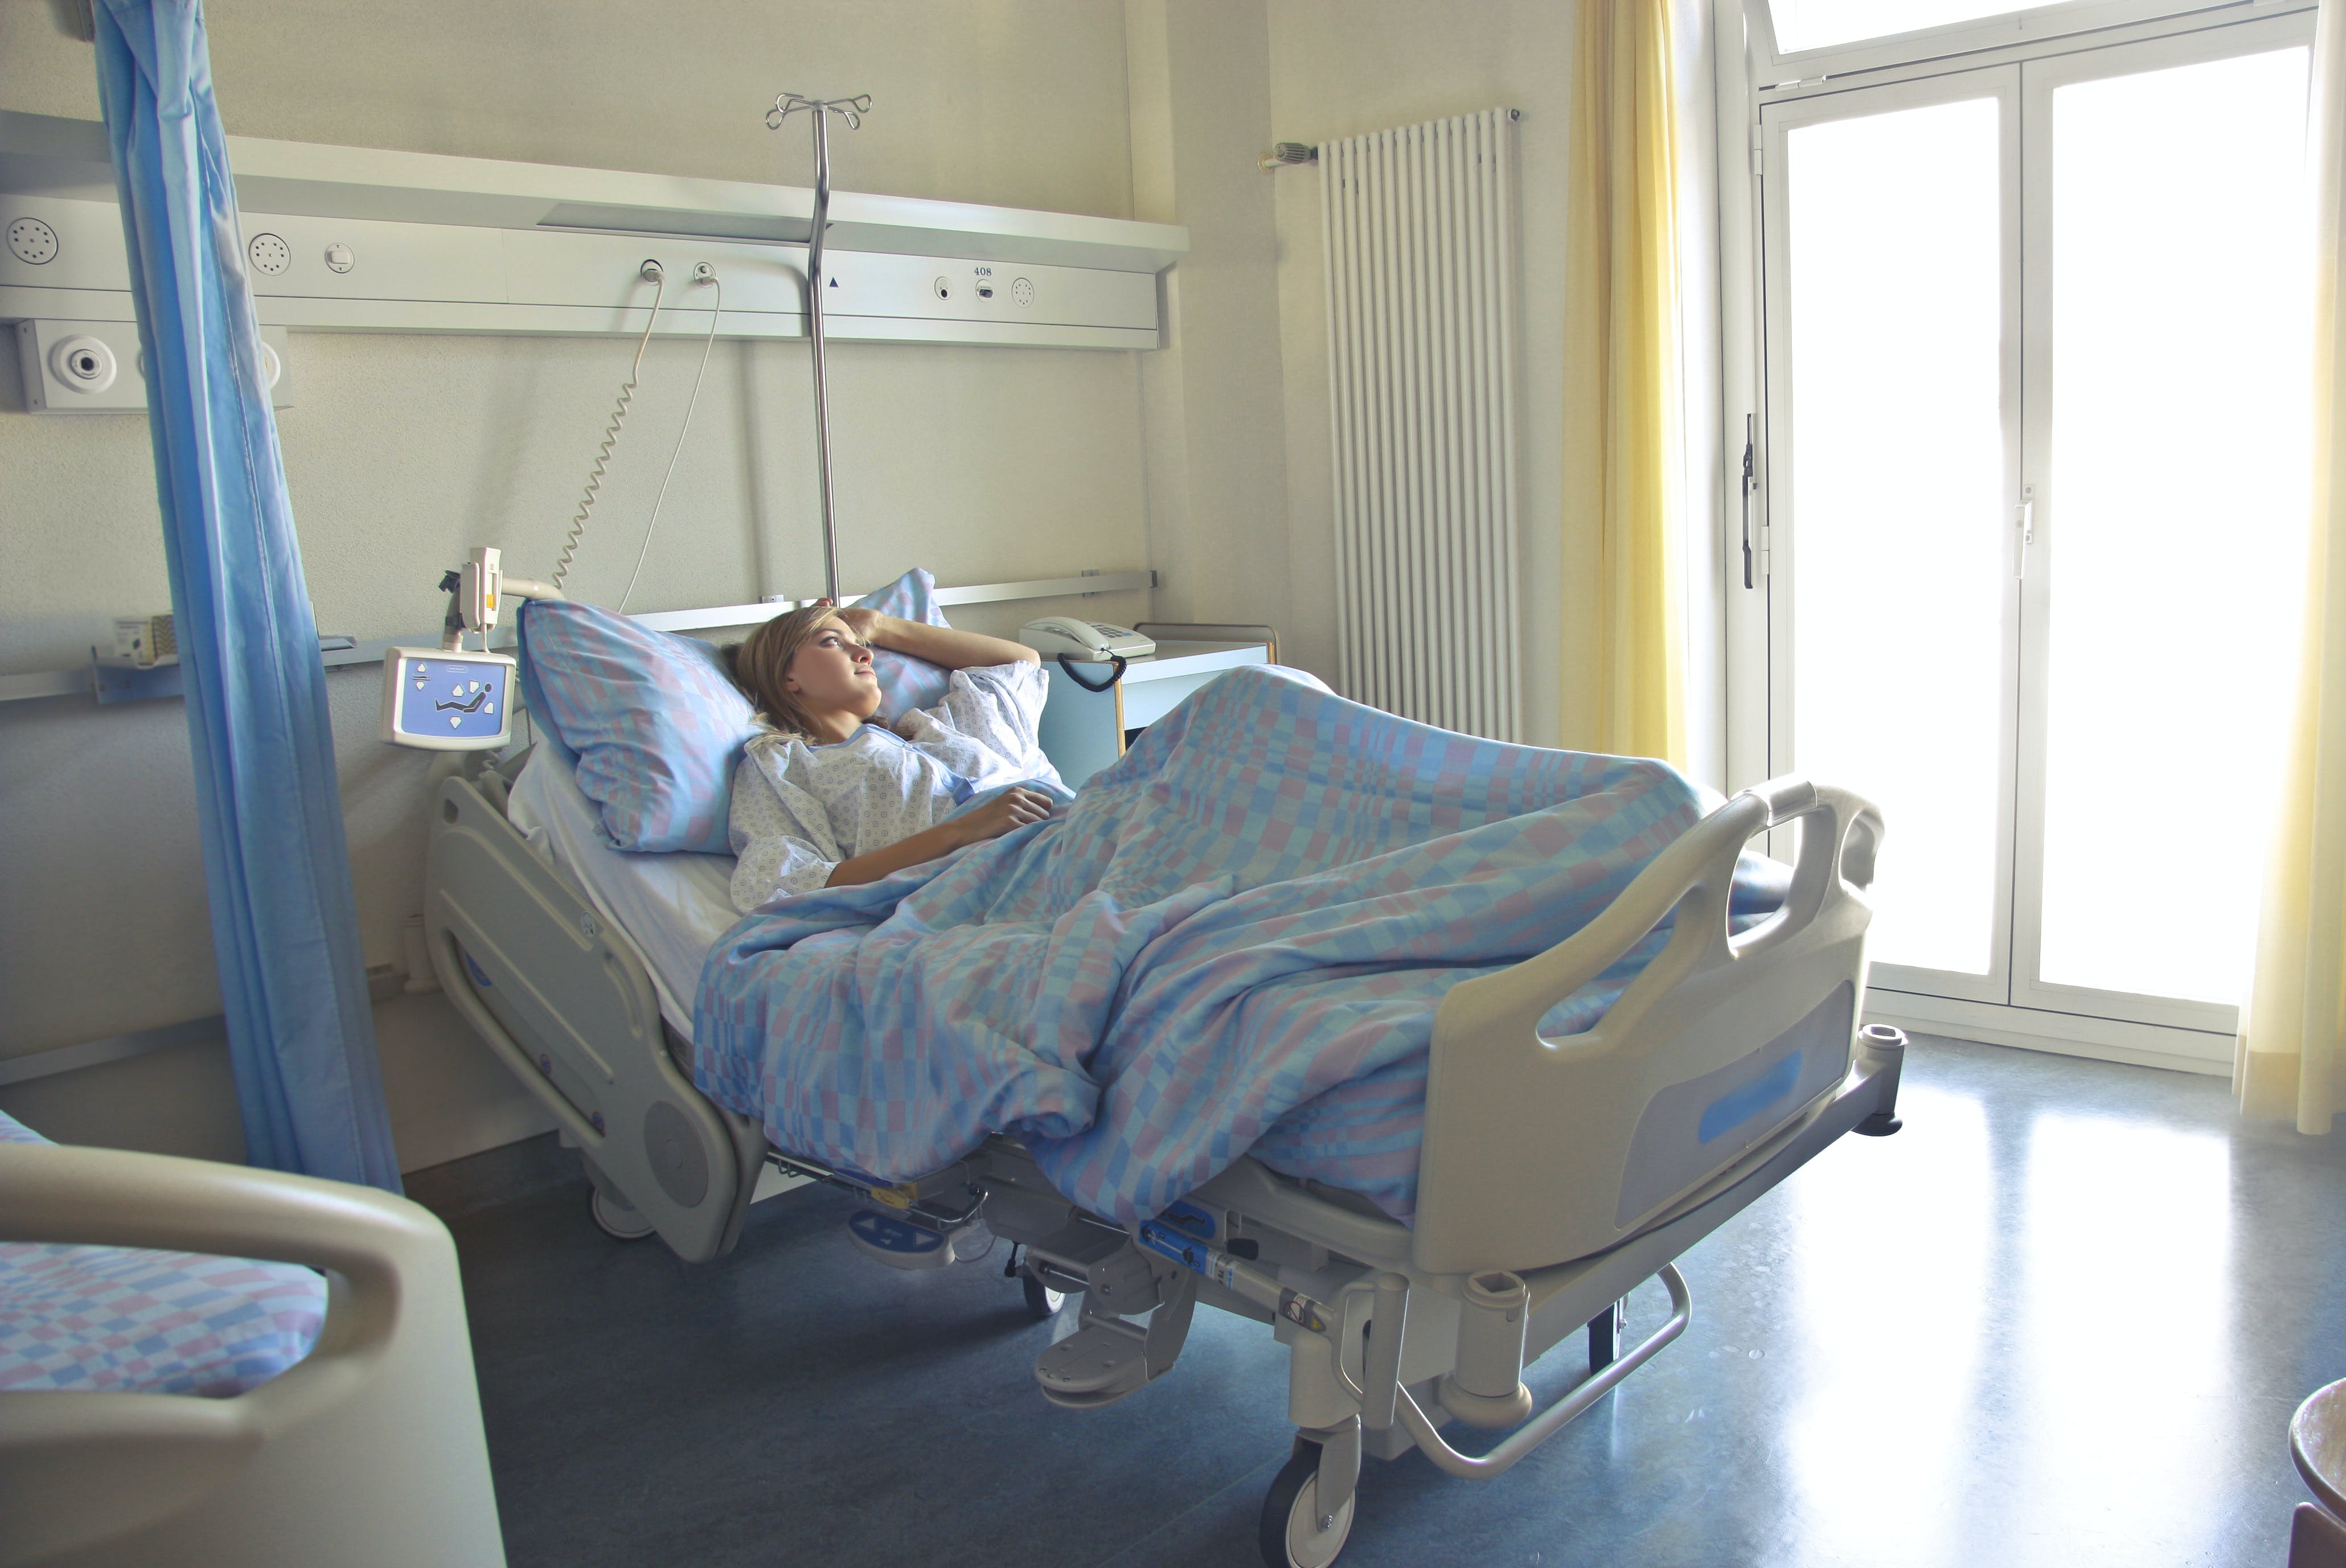 Une femme allongée sur un lit d'hôpital, seule dans sa chambre | Source : Pexels